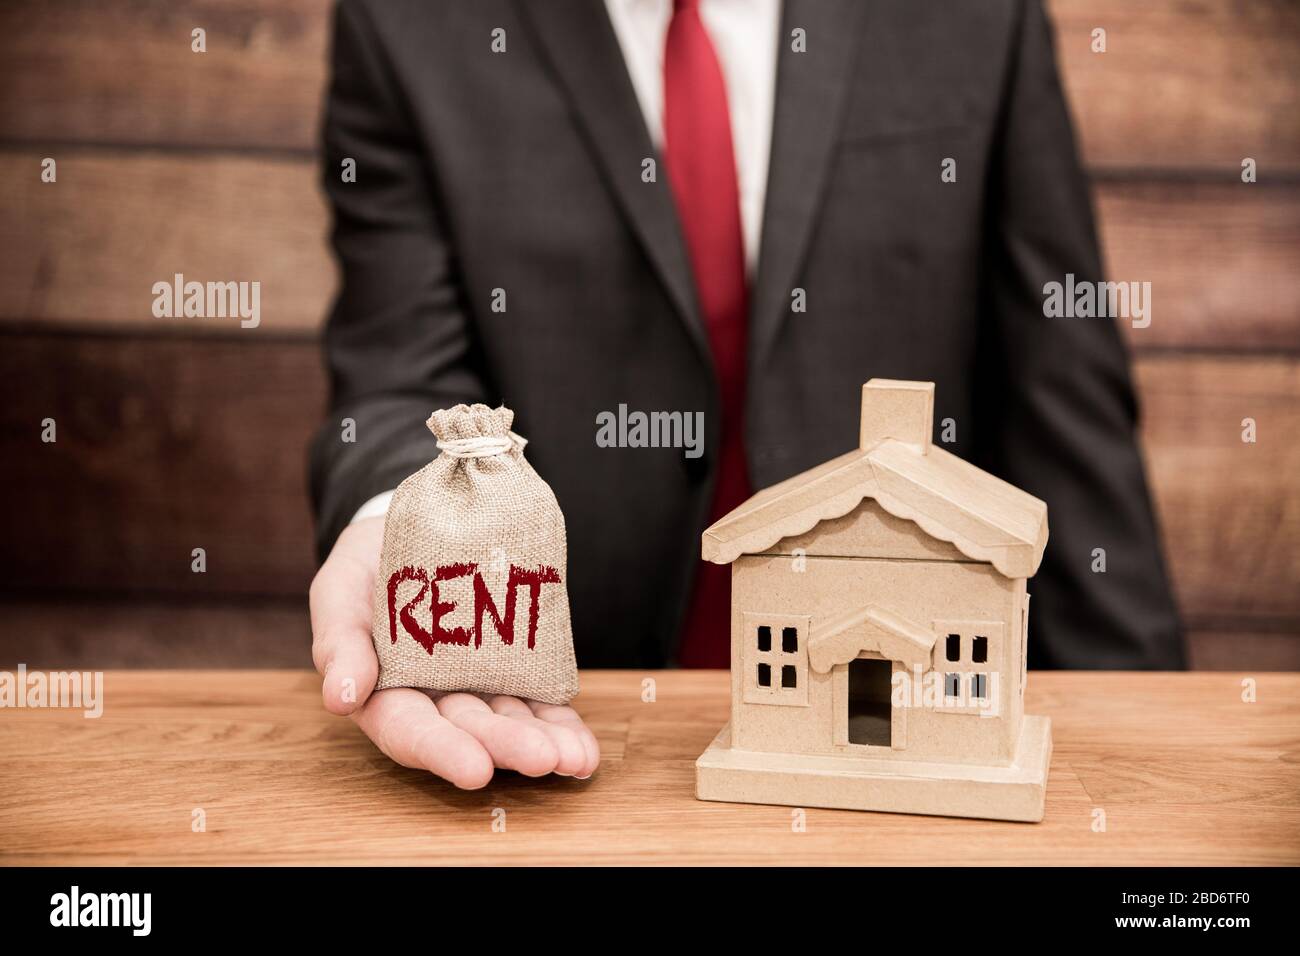 Un concept de logement d'un propriétaire ou d'un propriétaire de maison exigeant ou payant un loyer pour un bien immobilier Banque D'Images